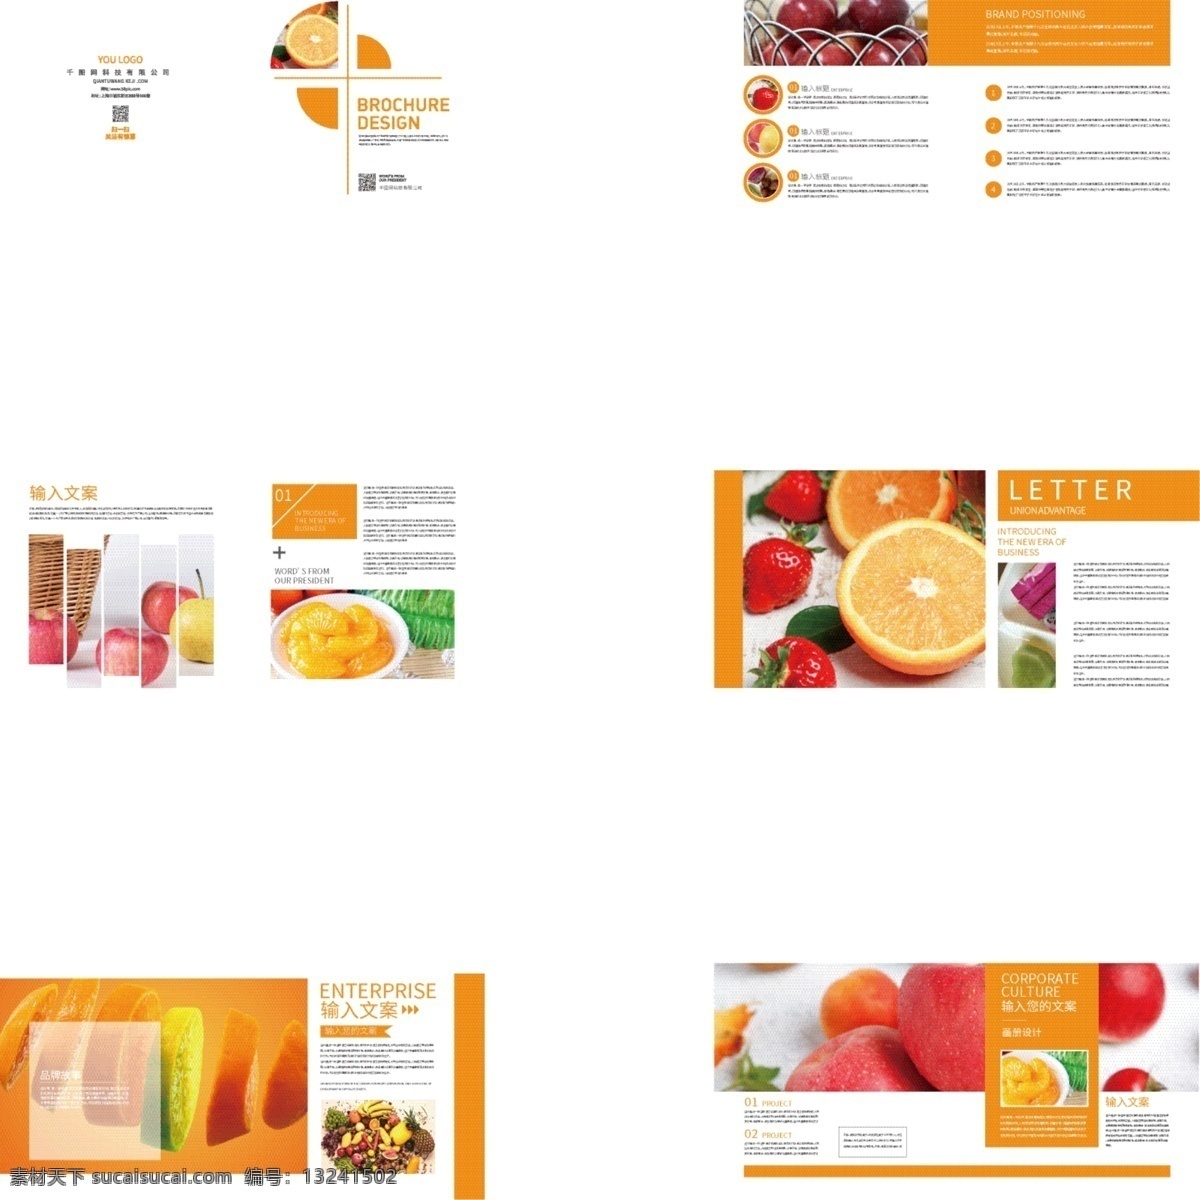 橙黄色 水果 画册设计 黄色画册 水果画册 食品画册 简约画册 橙子 苹果 草莓 食品 画册 画册封面